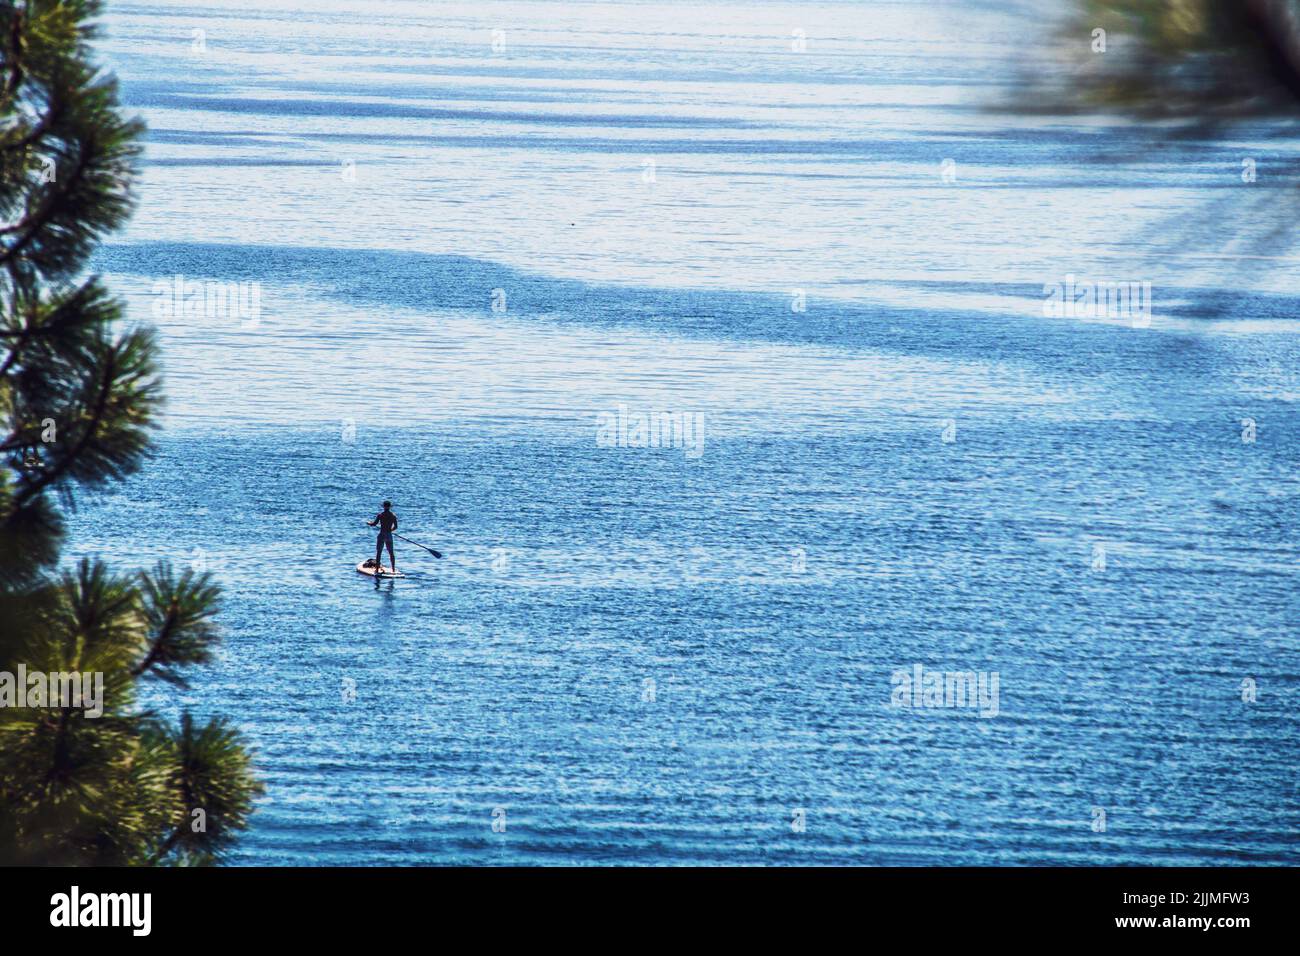 Seul dans les eaux bleues du lac Tahoe, un homme solitaire se tient sur un paddleboard qui s'éloigne de la rive, entouré d'arbres à feuilles persistantes de bokeh Banque D'Images